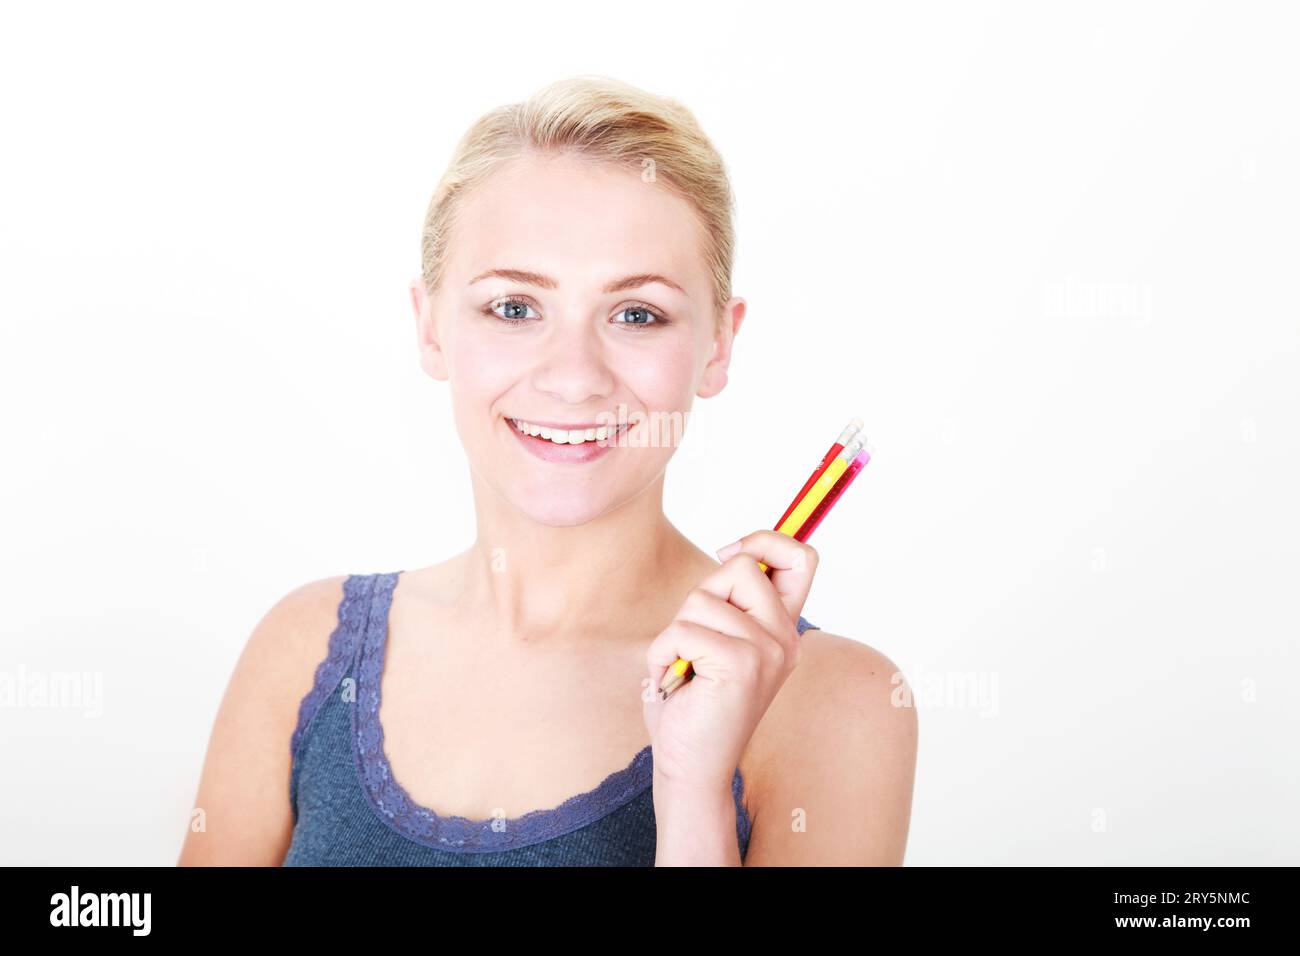 portrait de tête et épaules de jeune modèle blonde sur fond blanc tenant des crayons colorés Banque D'Images